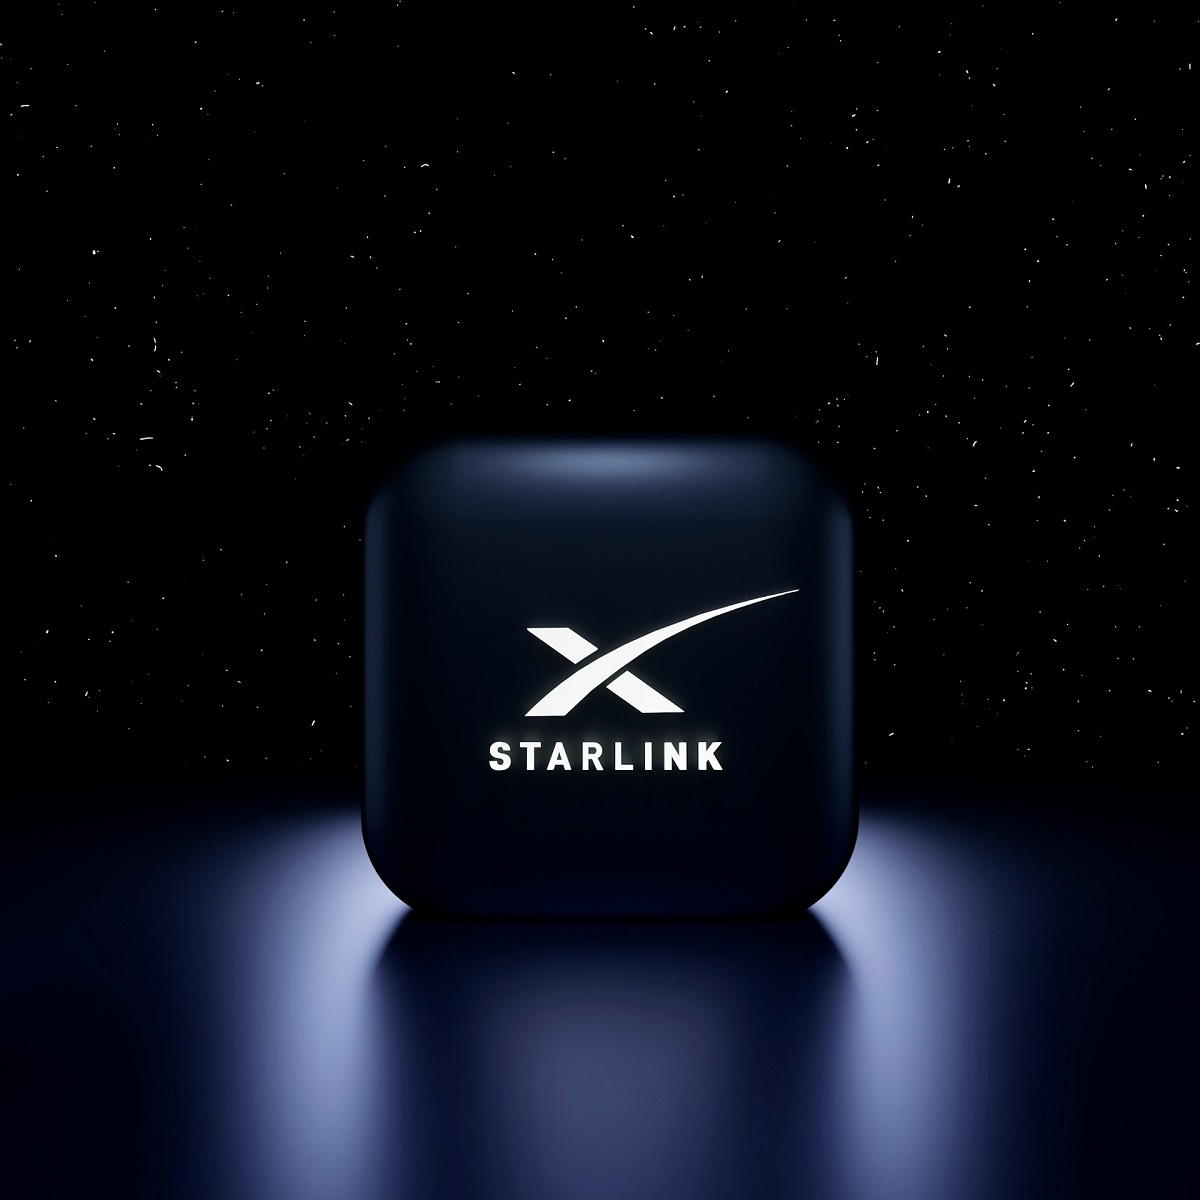 La empresa Starlink, perteneciente a estadounidense SpaceX, comenzará operaciones en Uruguay, luego de recibir la autorización de la Unidad Reguladora de Servicios de Comunicaciones del país